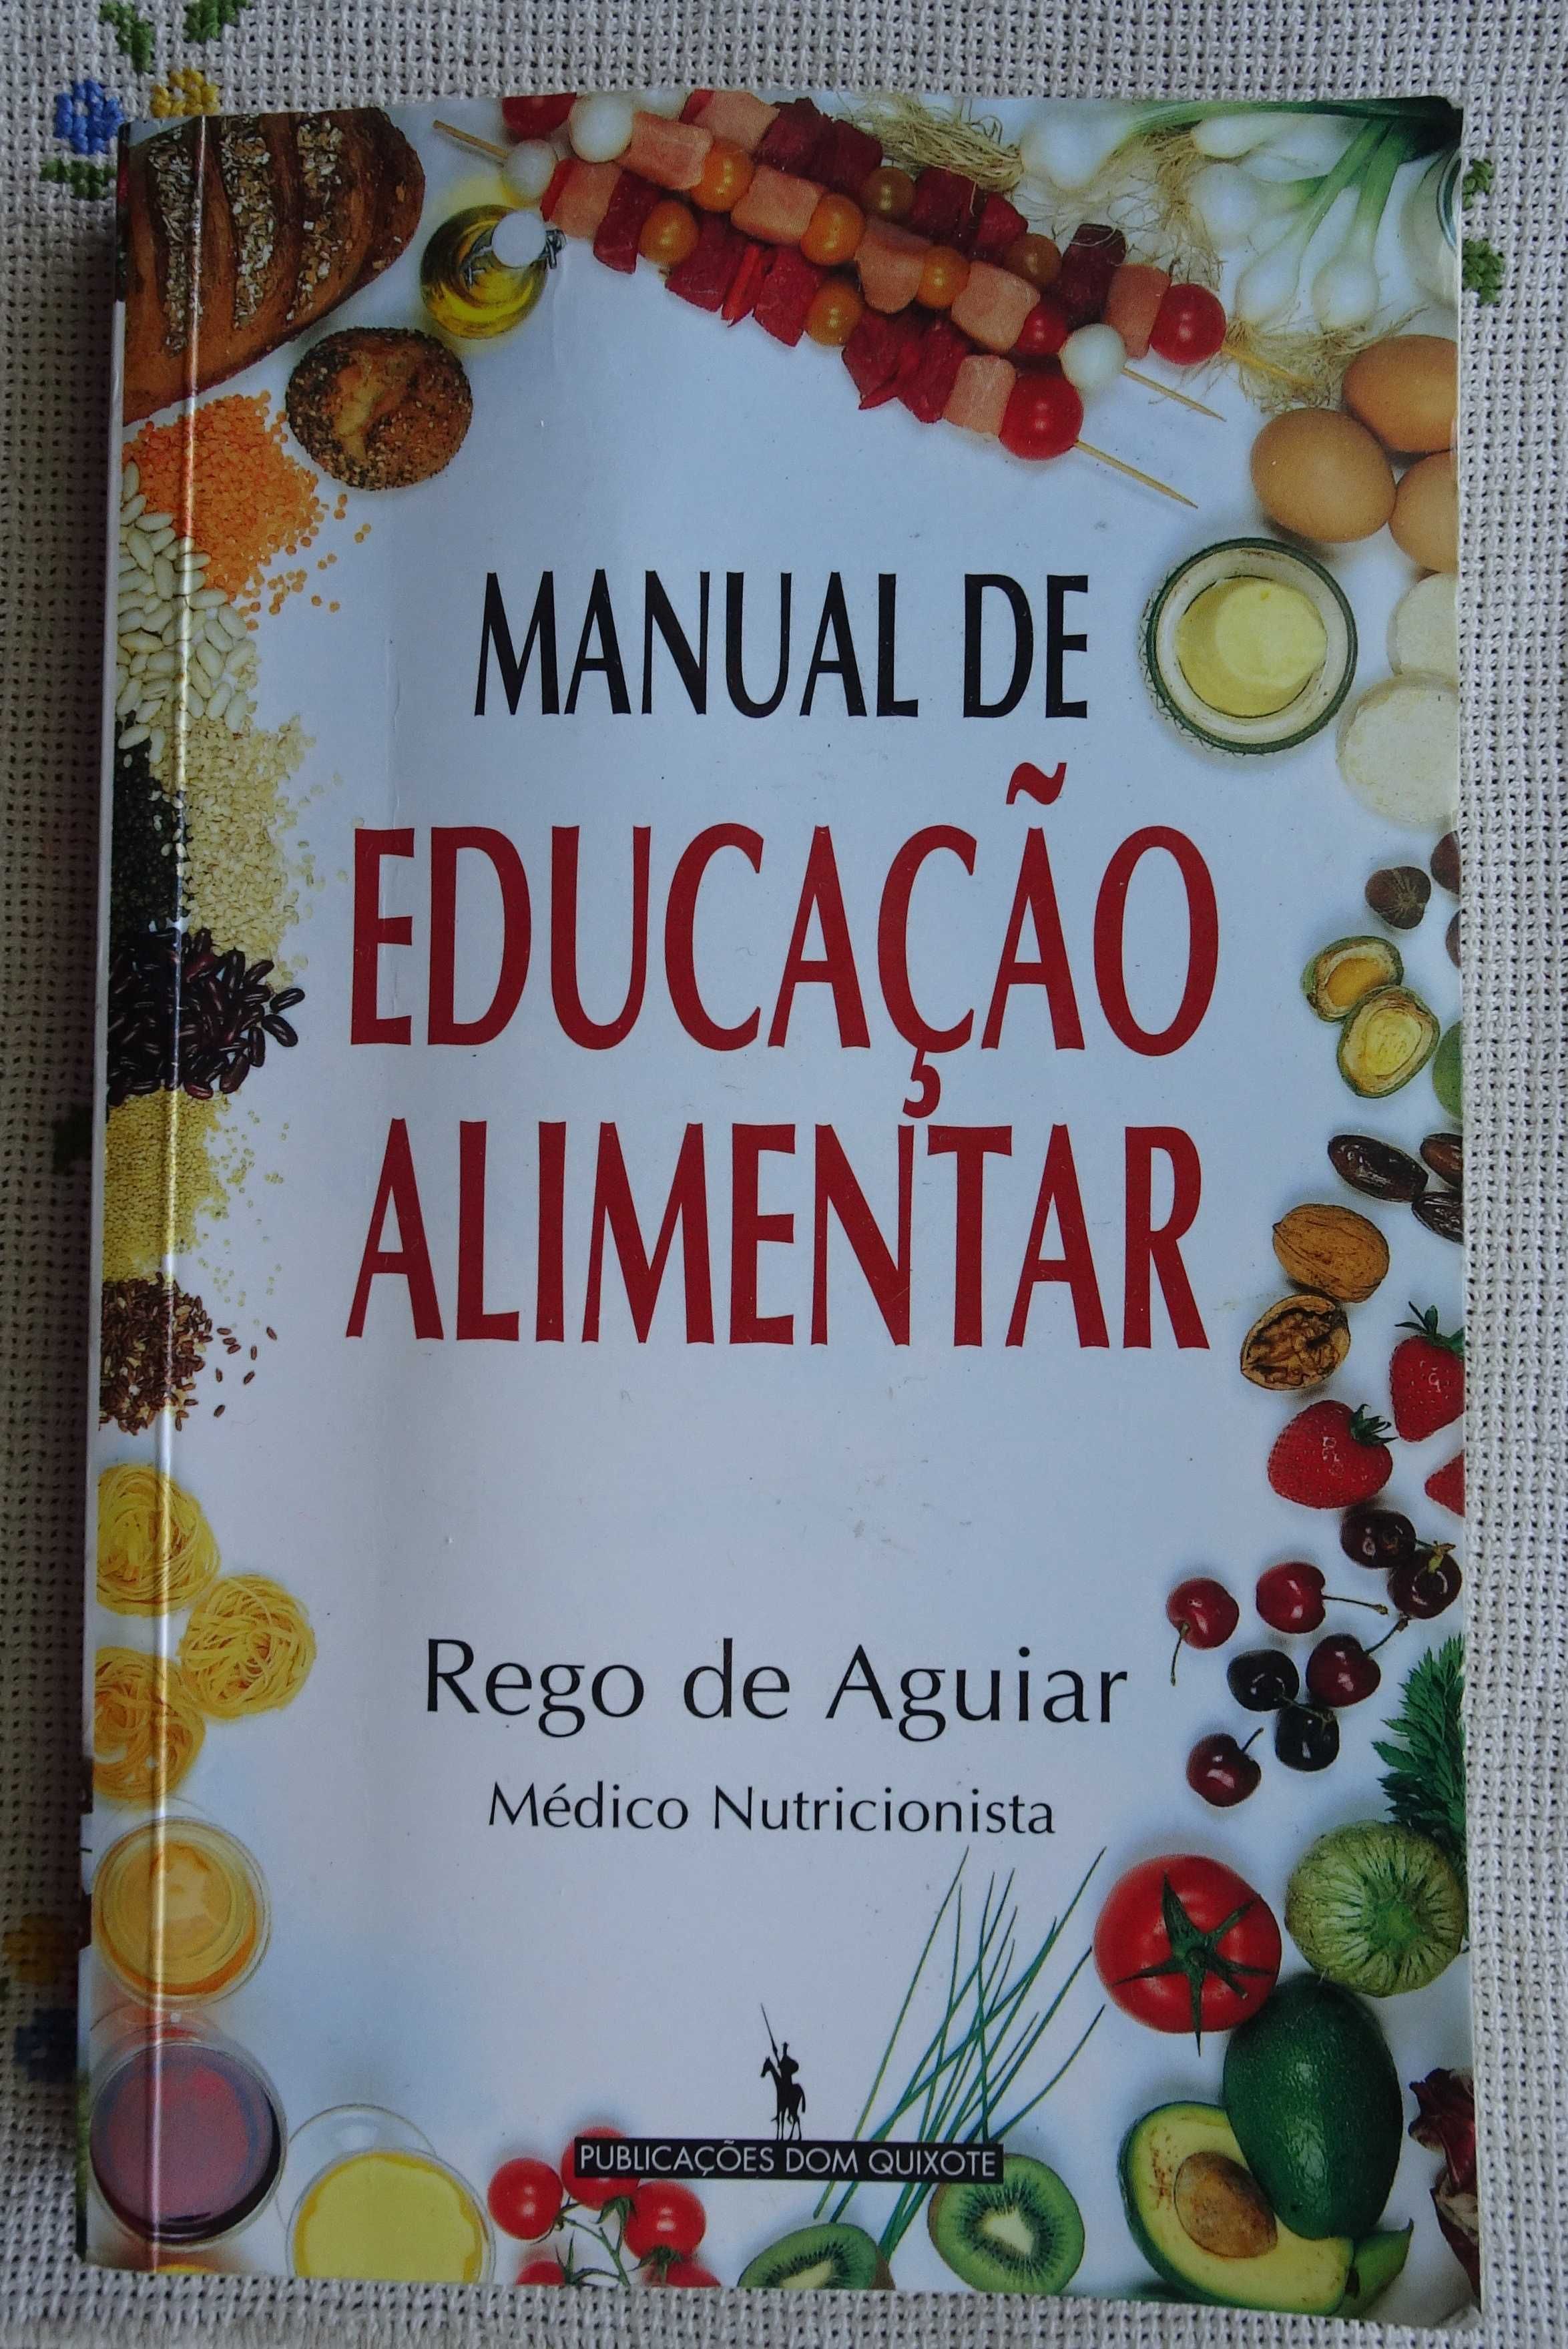 Manual de Educação Alimentar de Rego de Aguiar (Médico Nutricionista)